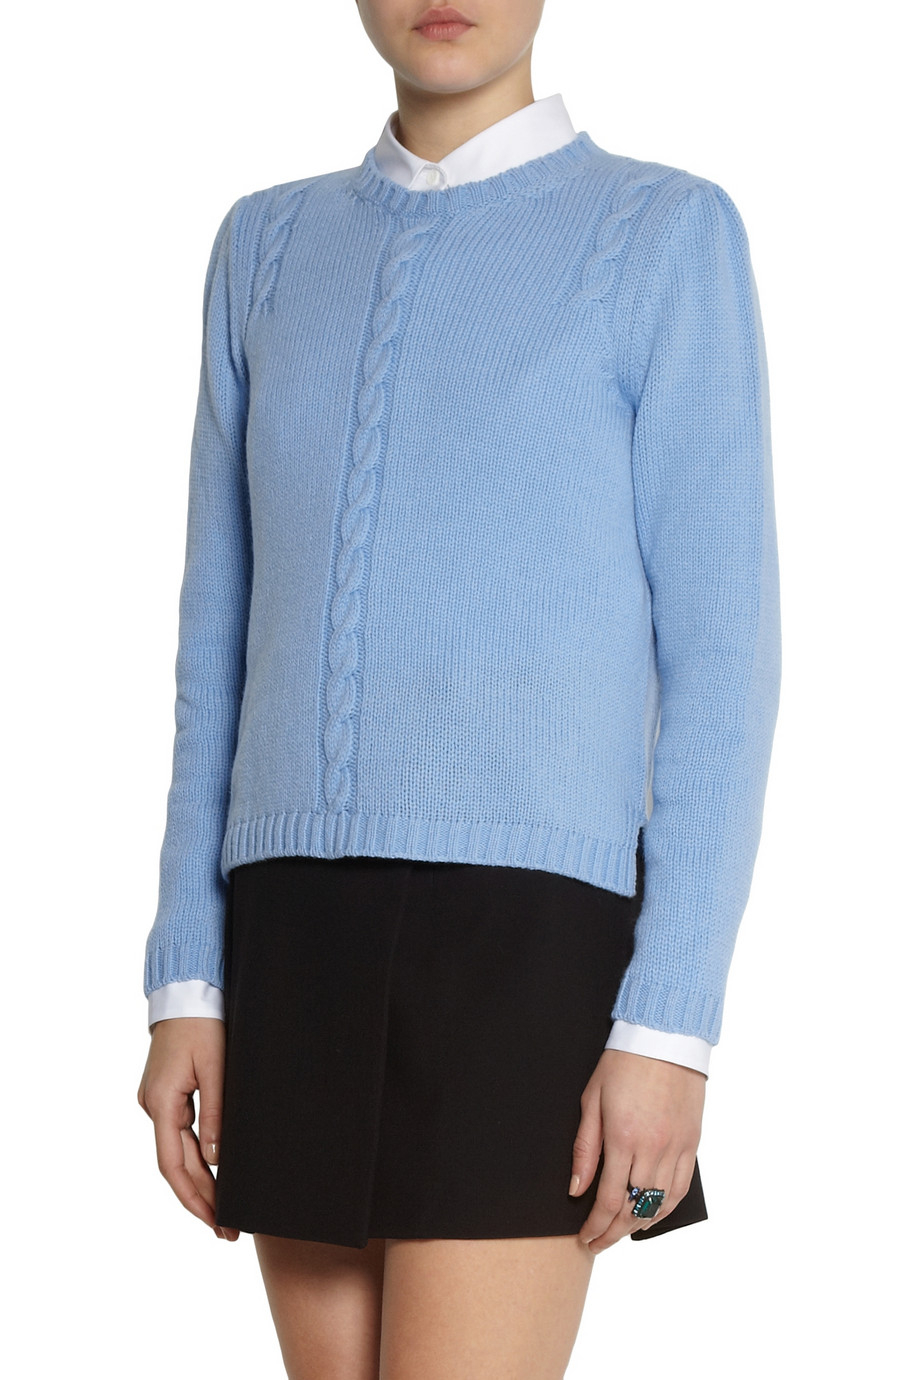 Miu miu Cable Knit Cashmere Sweater in Blue | Lyst